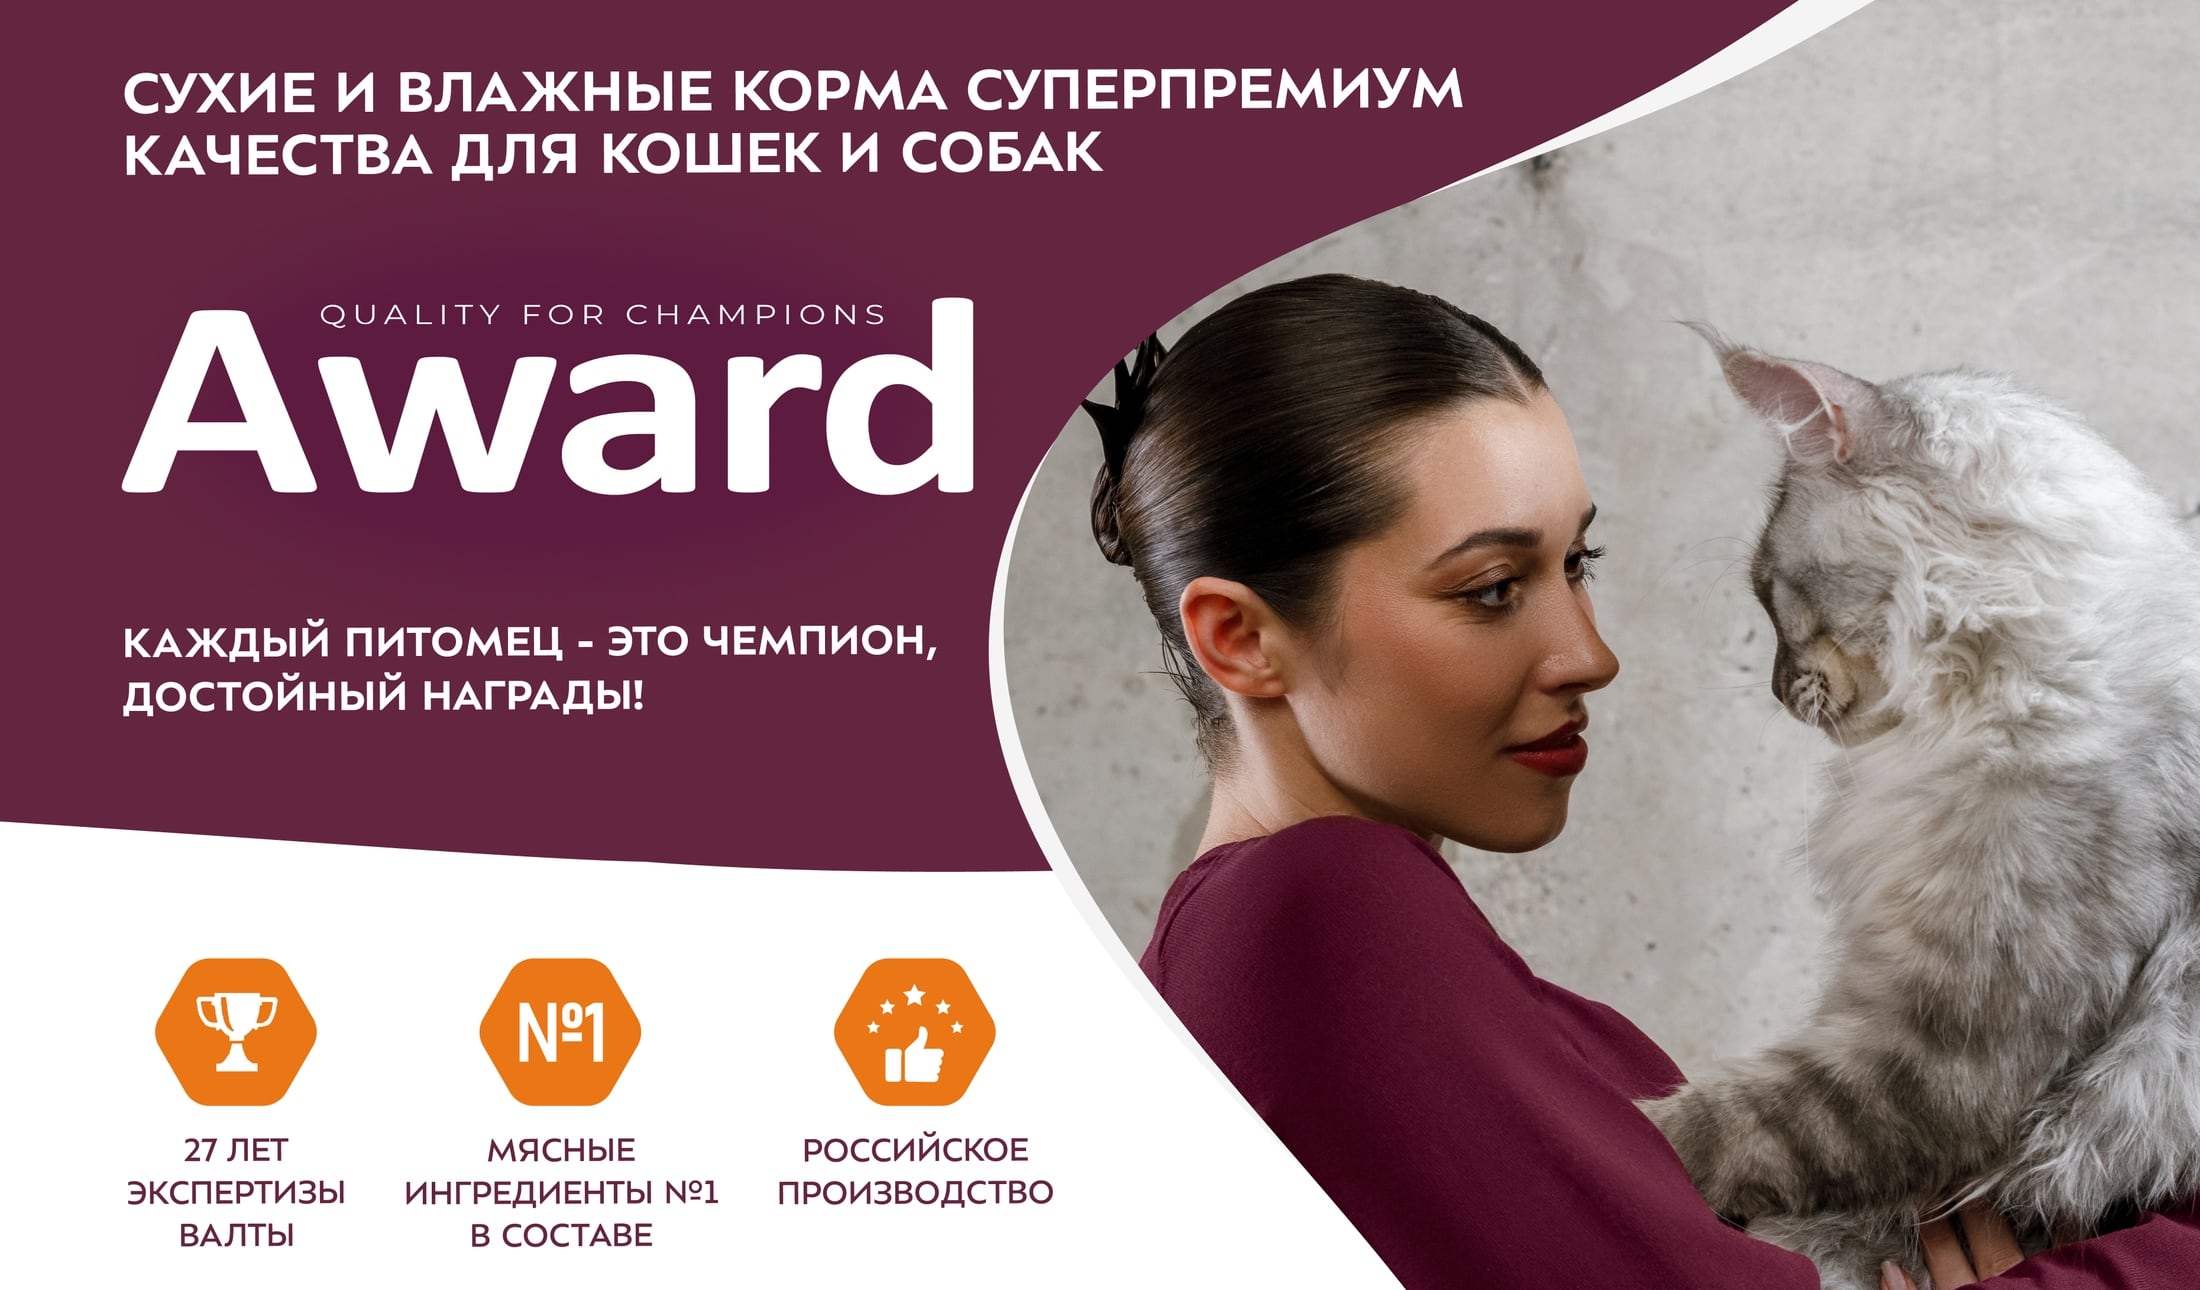 купить суперпремиум корм AWARD для собаки или кошки с бесплатной доставкой в Калининграде